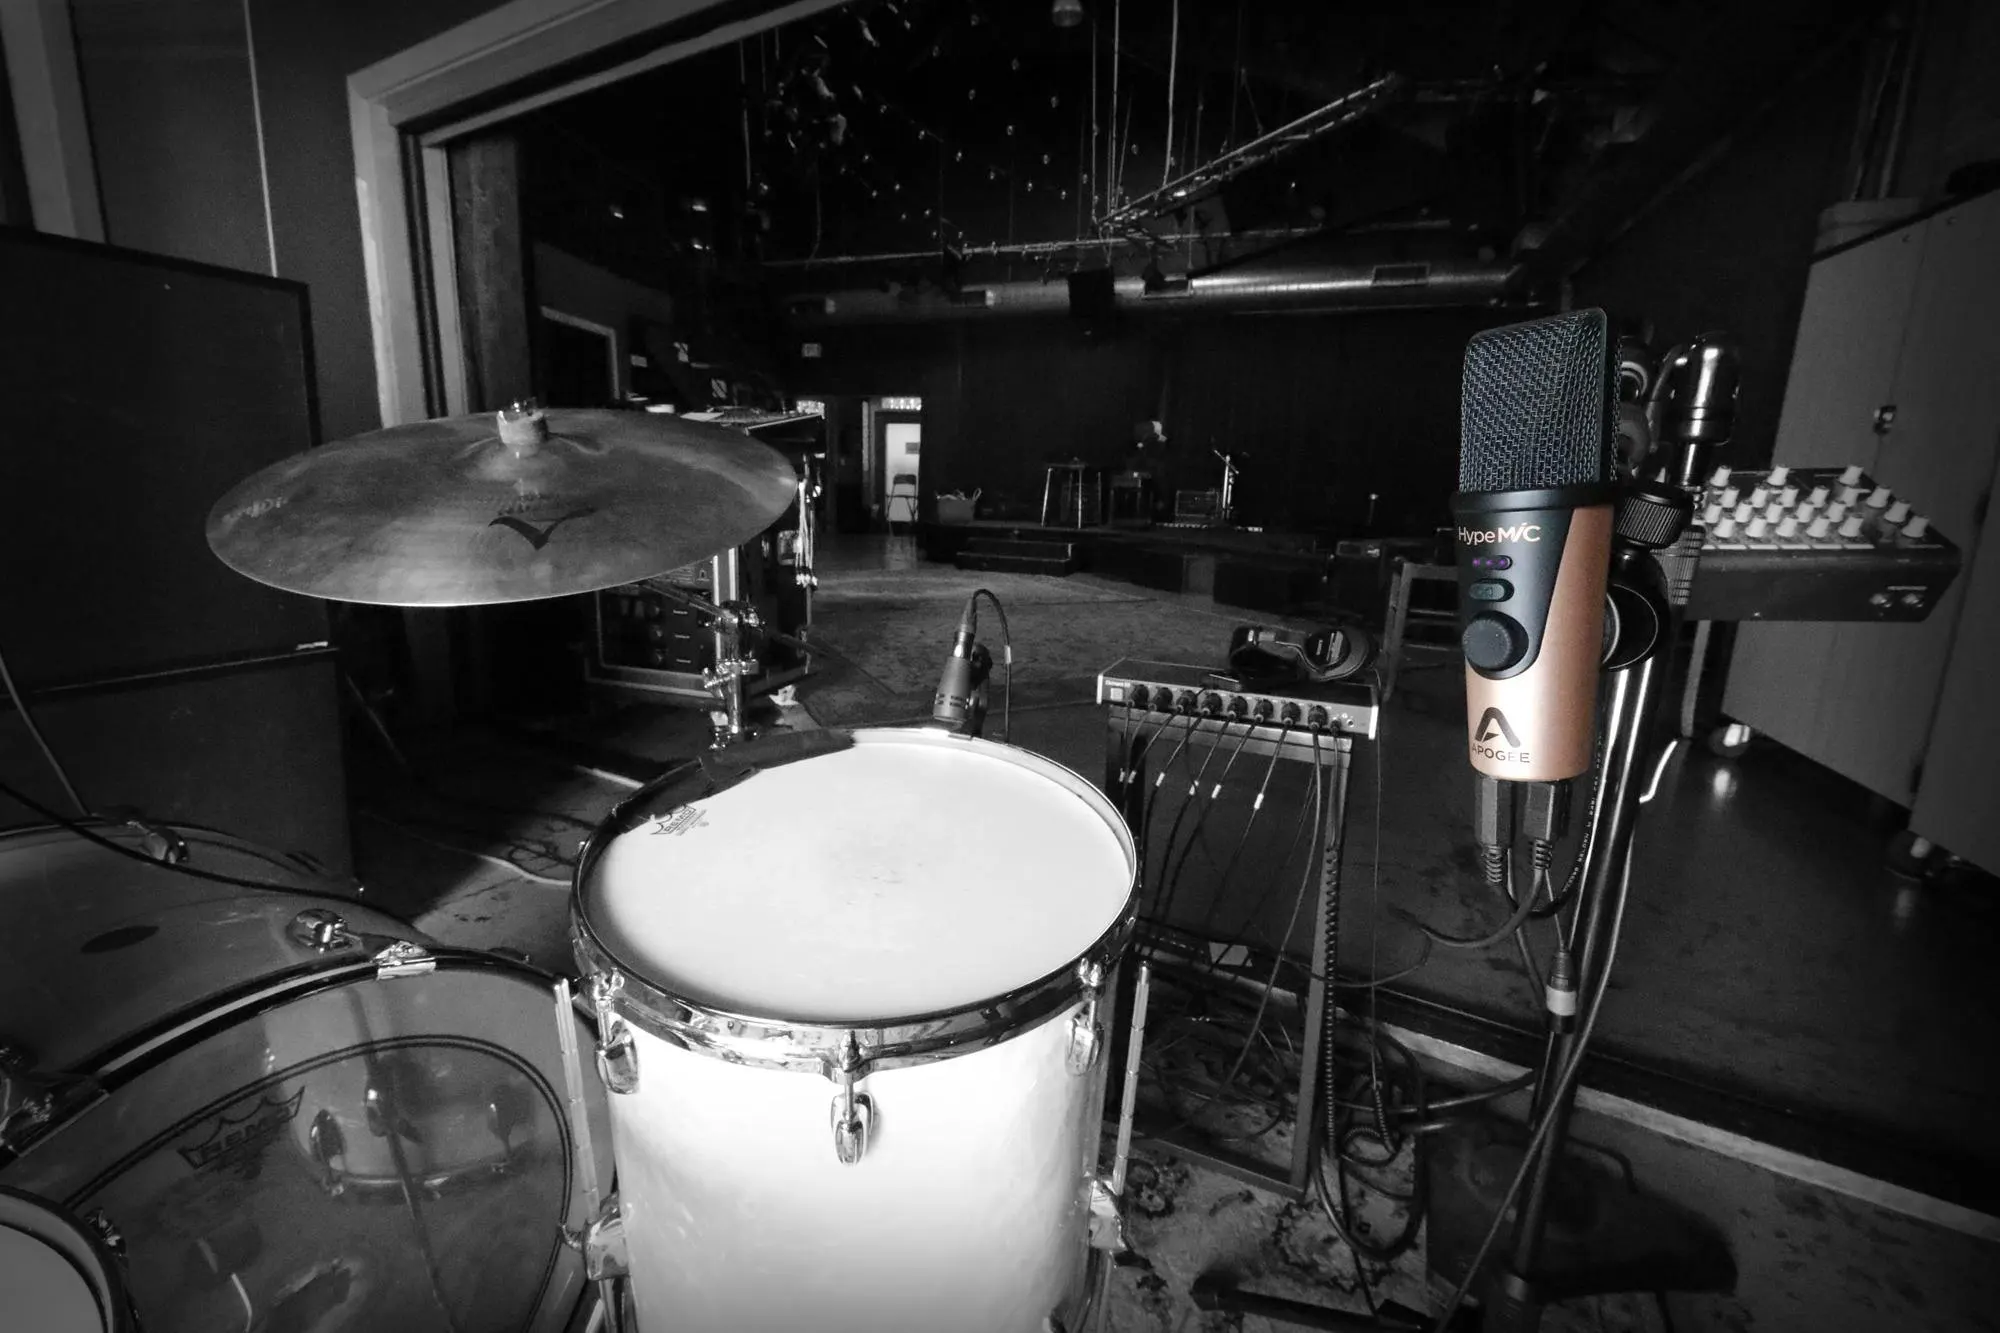 HypeMic for Studio Recording